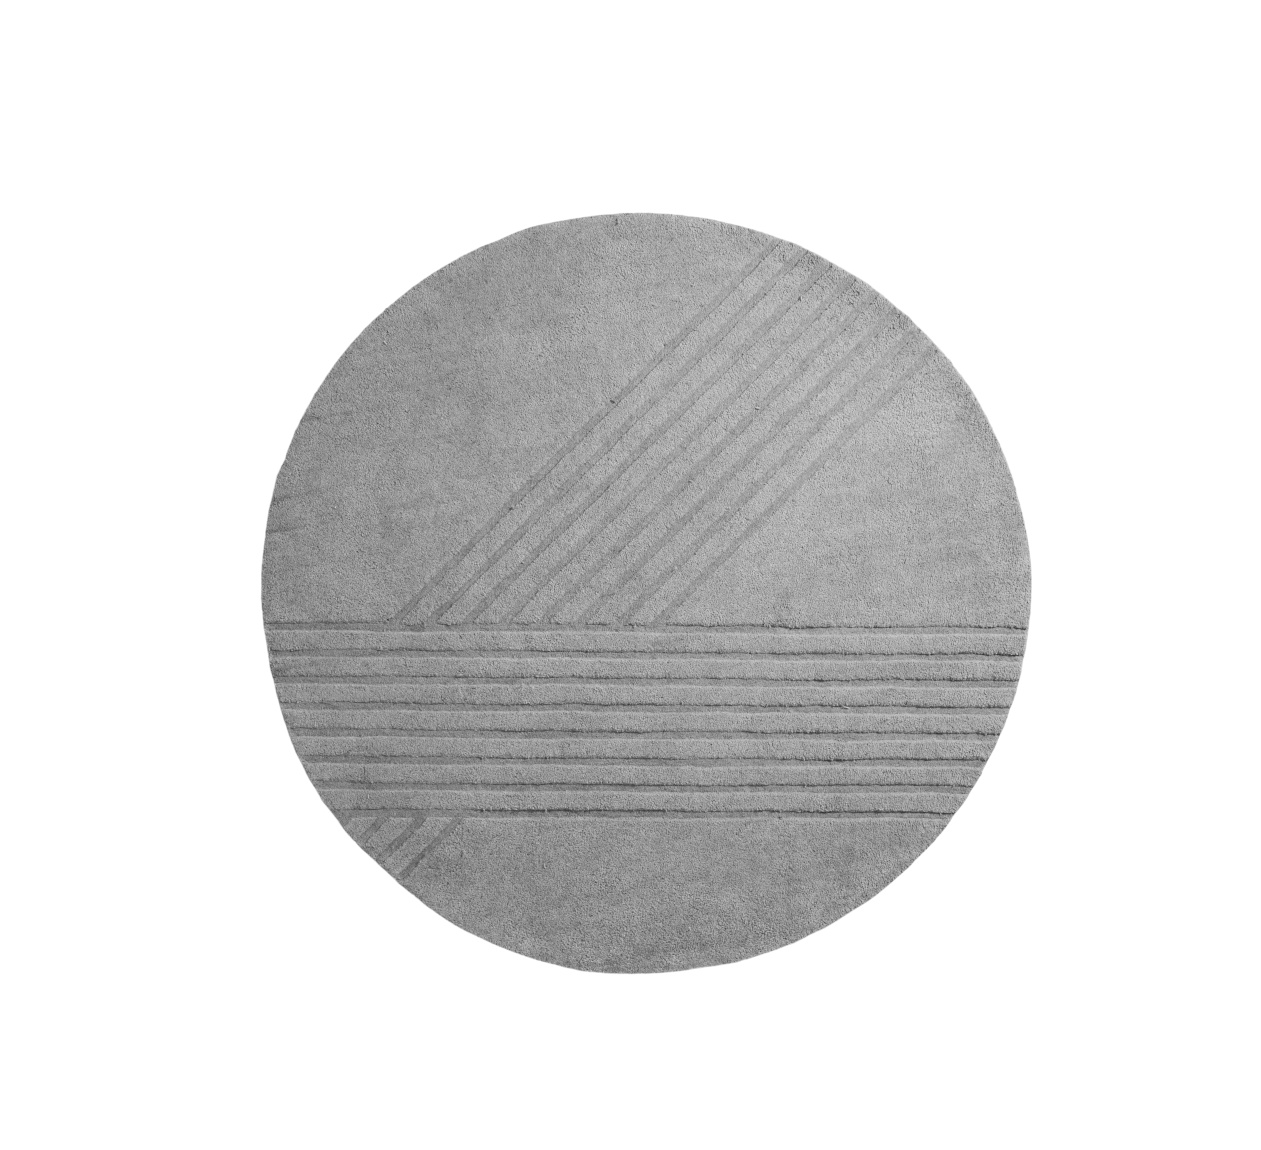 Kyoto Teppich, Ø 250 cm, grey